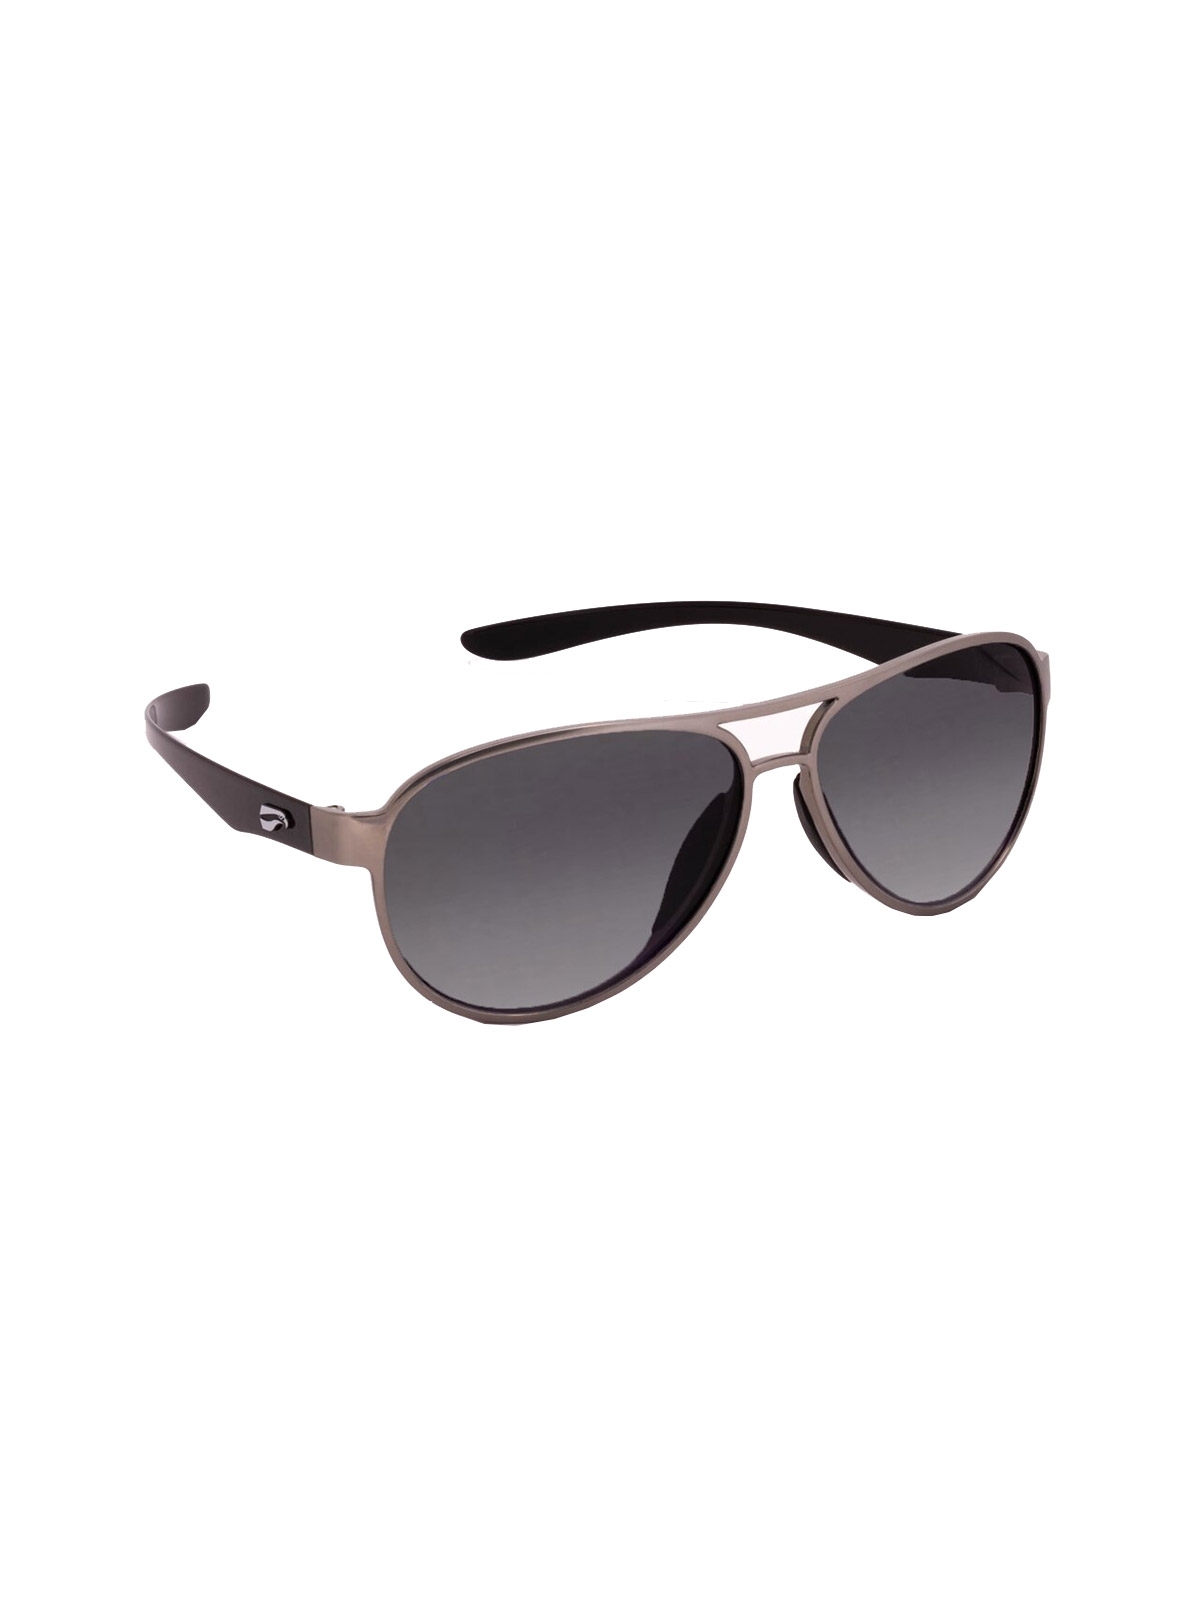 Flying Eyes Sonnenbrille Kestrel Aviator - Rahmen silberfarben mit schwarzen Bügeln, Linsen grau (Verlauf)